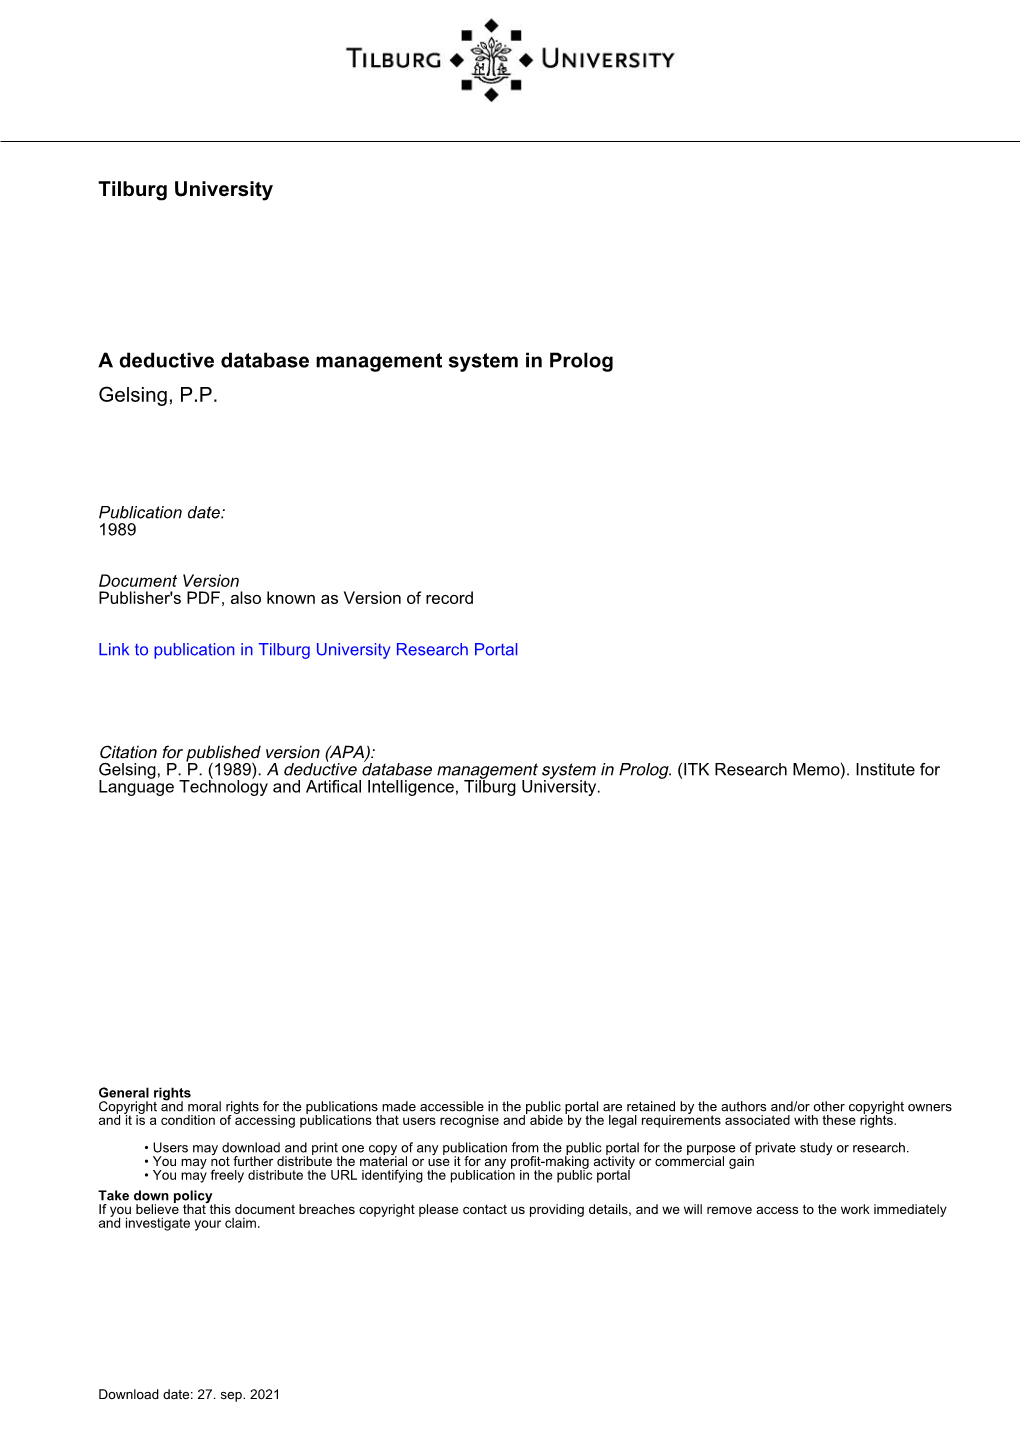 Tilburg University a Deductive Database Management System in Prolog Gelsing, P.P